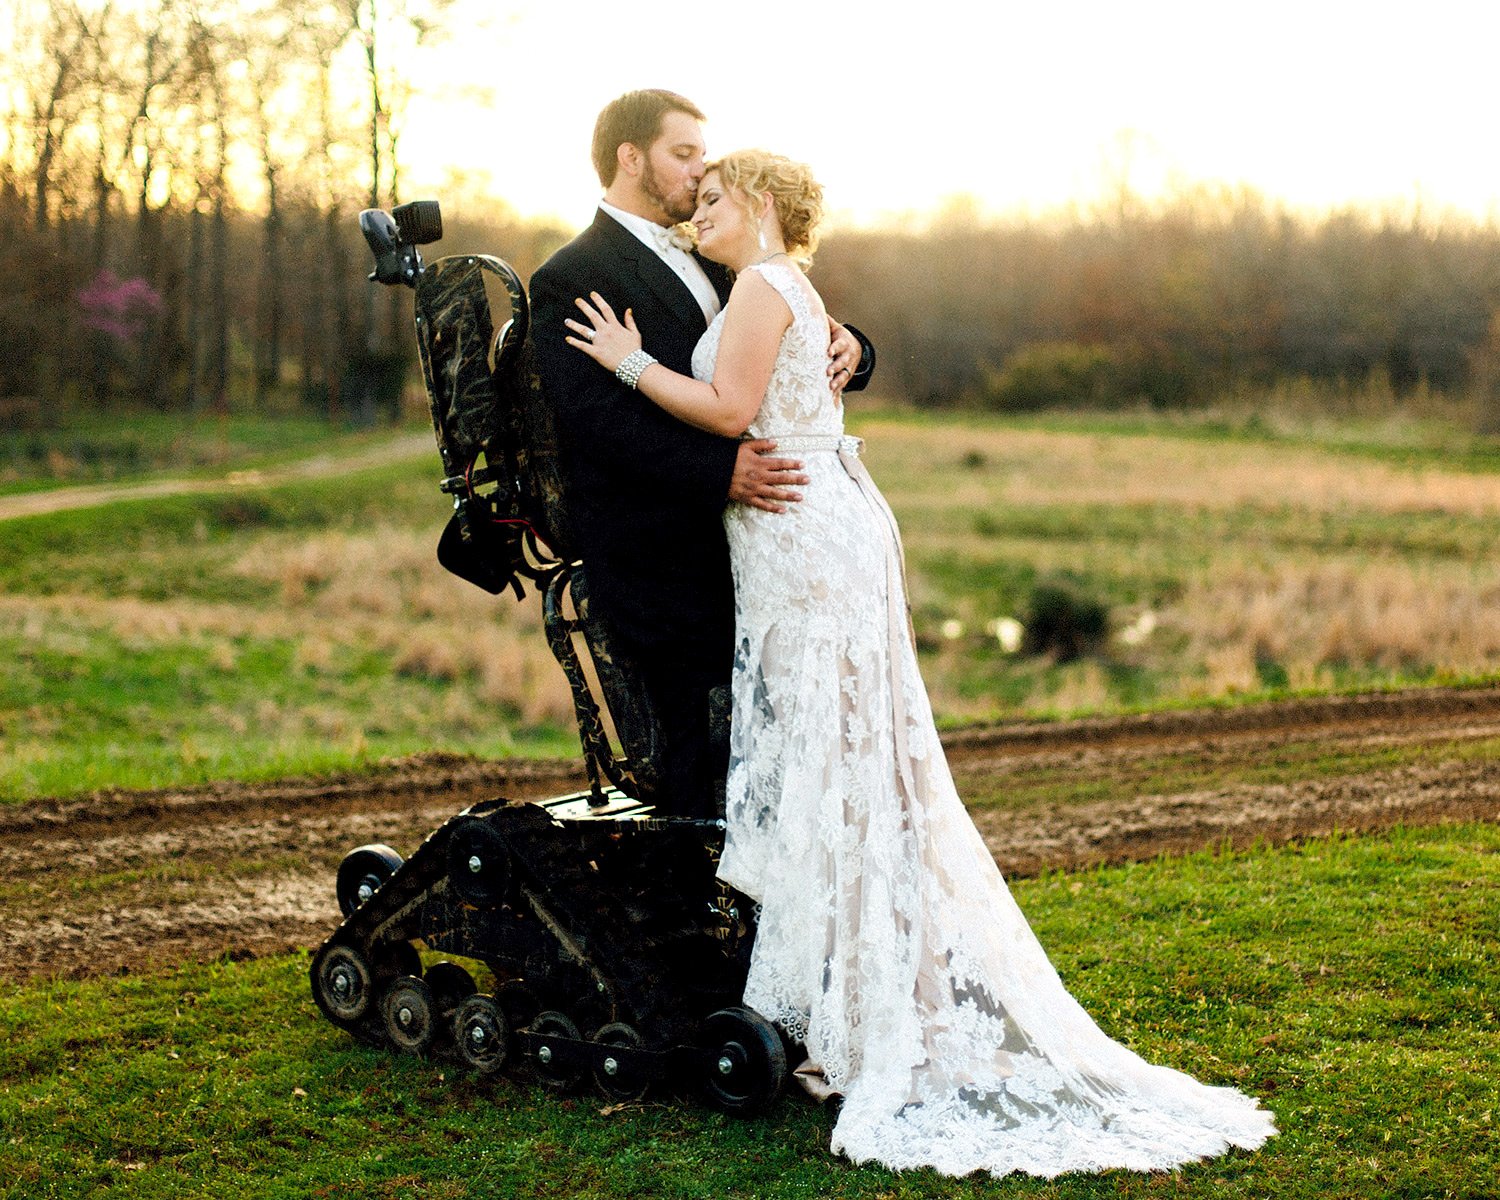 Муж инвалид любовник. Девушка инвалид свадьба. Свадьба на инвалидной коляске. Свадебные фото. Свадебная фотосессия инвалидов.